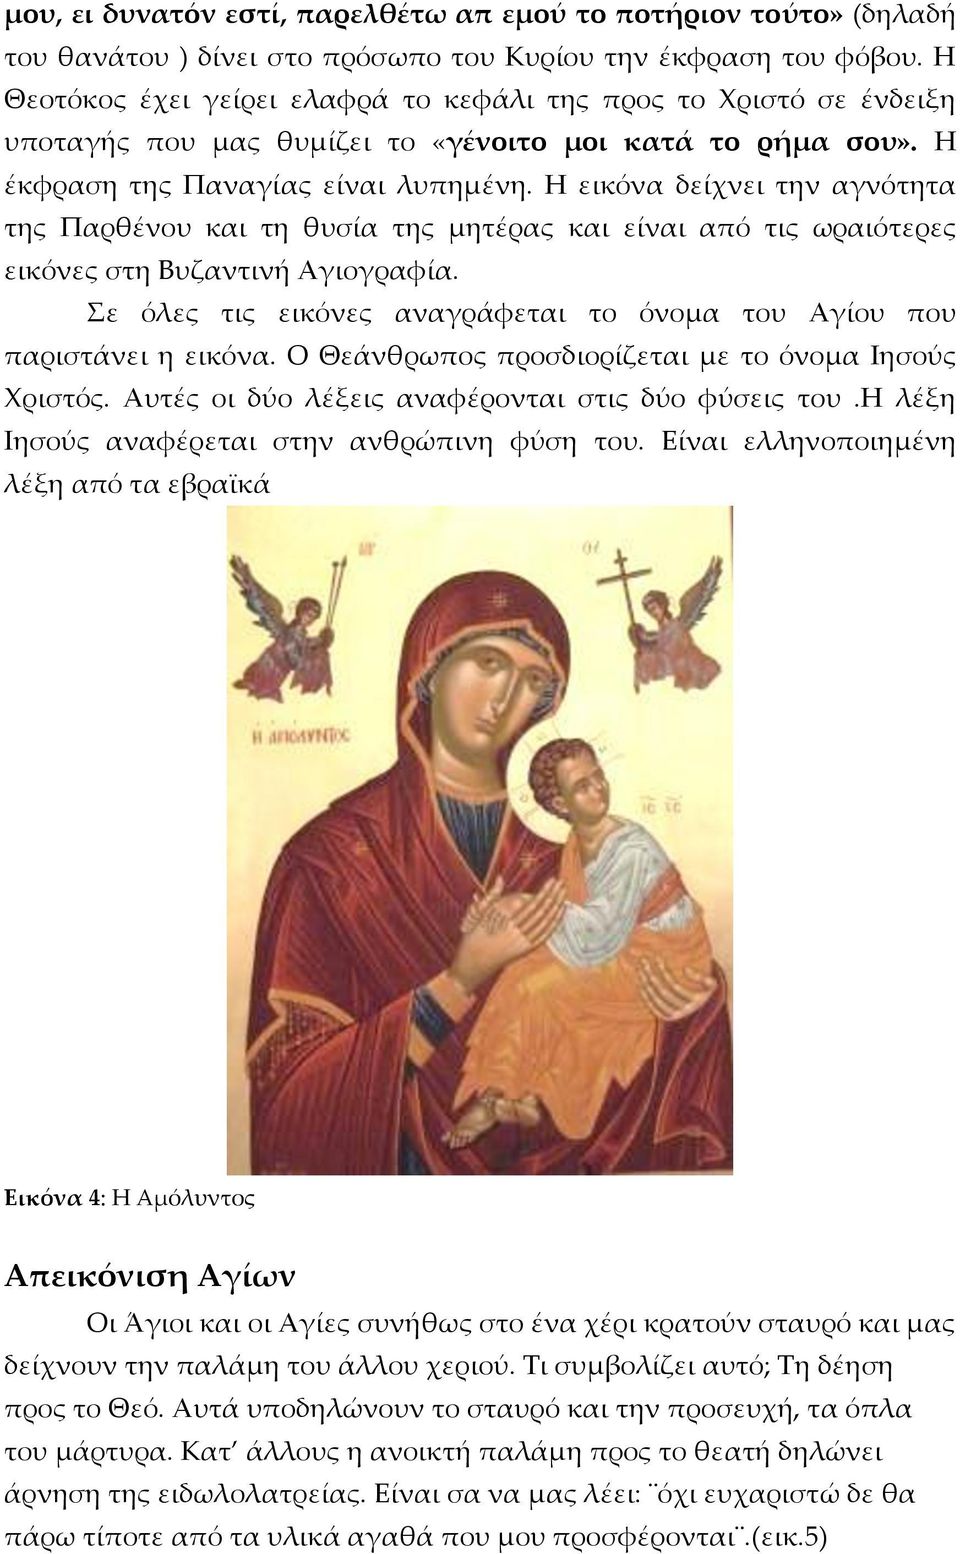 Η εικόνα δείχνει την αγνότητα της Παρθένου και τη θυσία της μητέρας και είναι από τις ωραιότερες εικόνες στη Βυζαντινή Αγιογραφία.